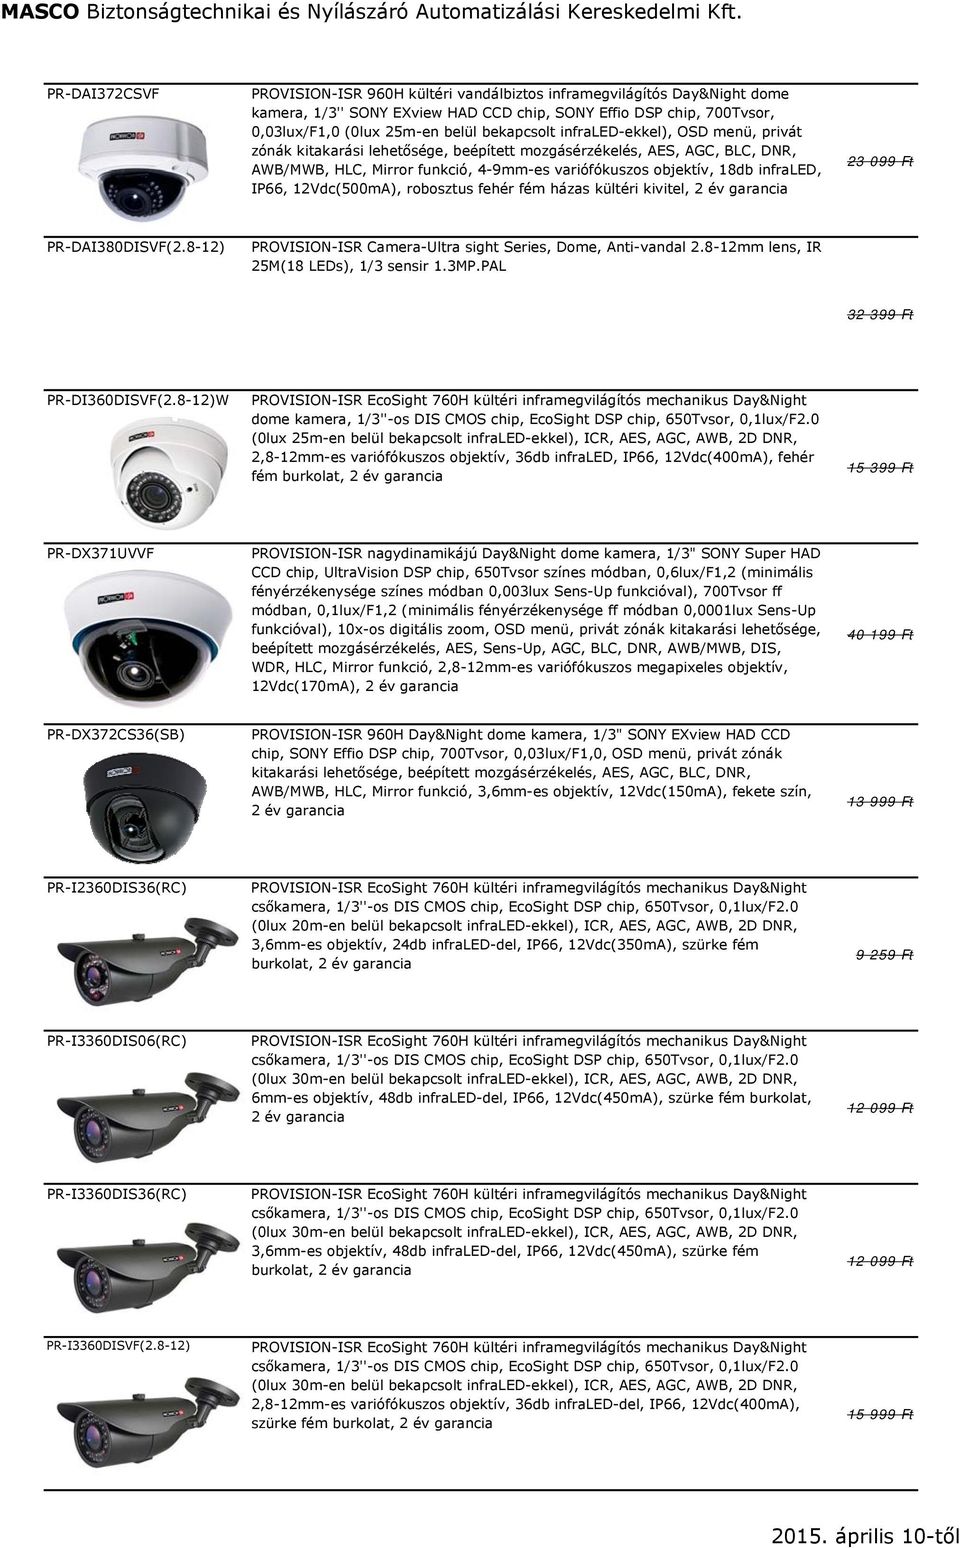 IP66, 12Vdc(500mA), robosztus fehér fém házas kültéri kivitel, 2 év garancia 23 099 Ft PR-DAI380DISVF(2.8-12) PROVISION-ISR Camera-Ultra sight Series, Dome, Anti-vandal 2.